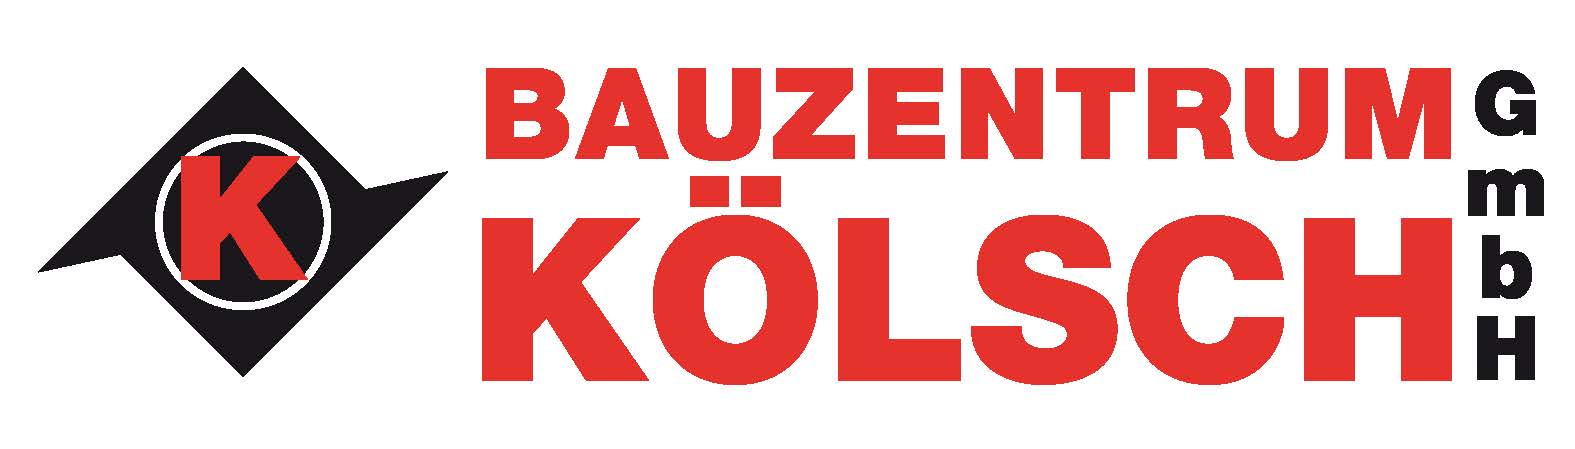 Bauzentrum Kölsch GmbH